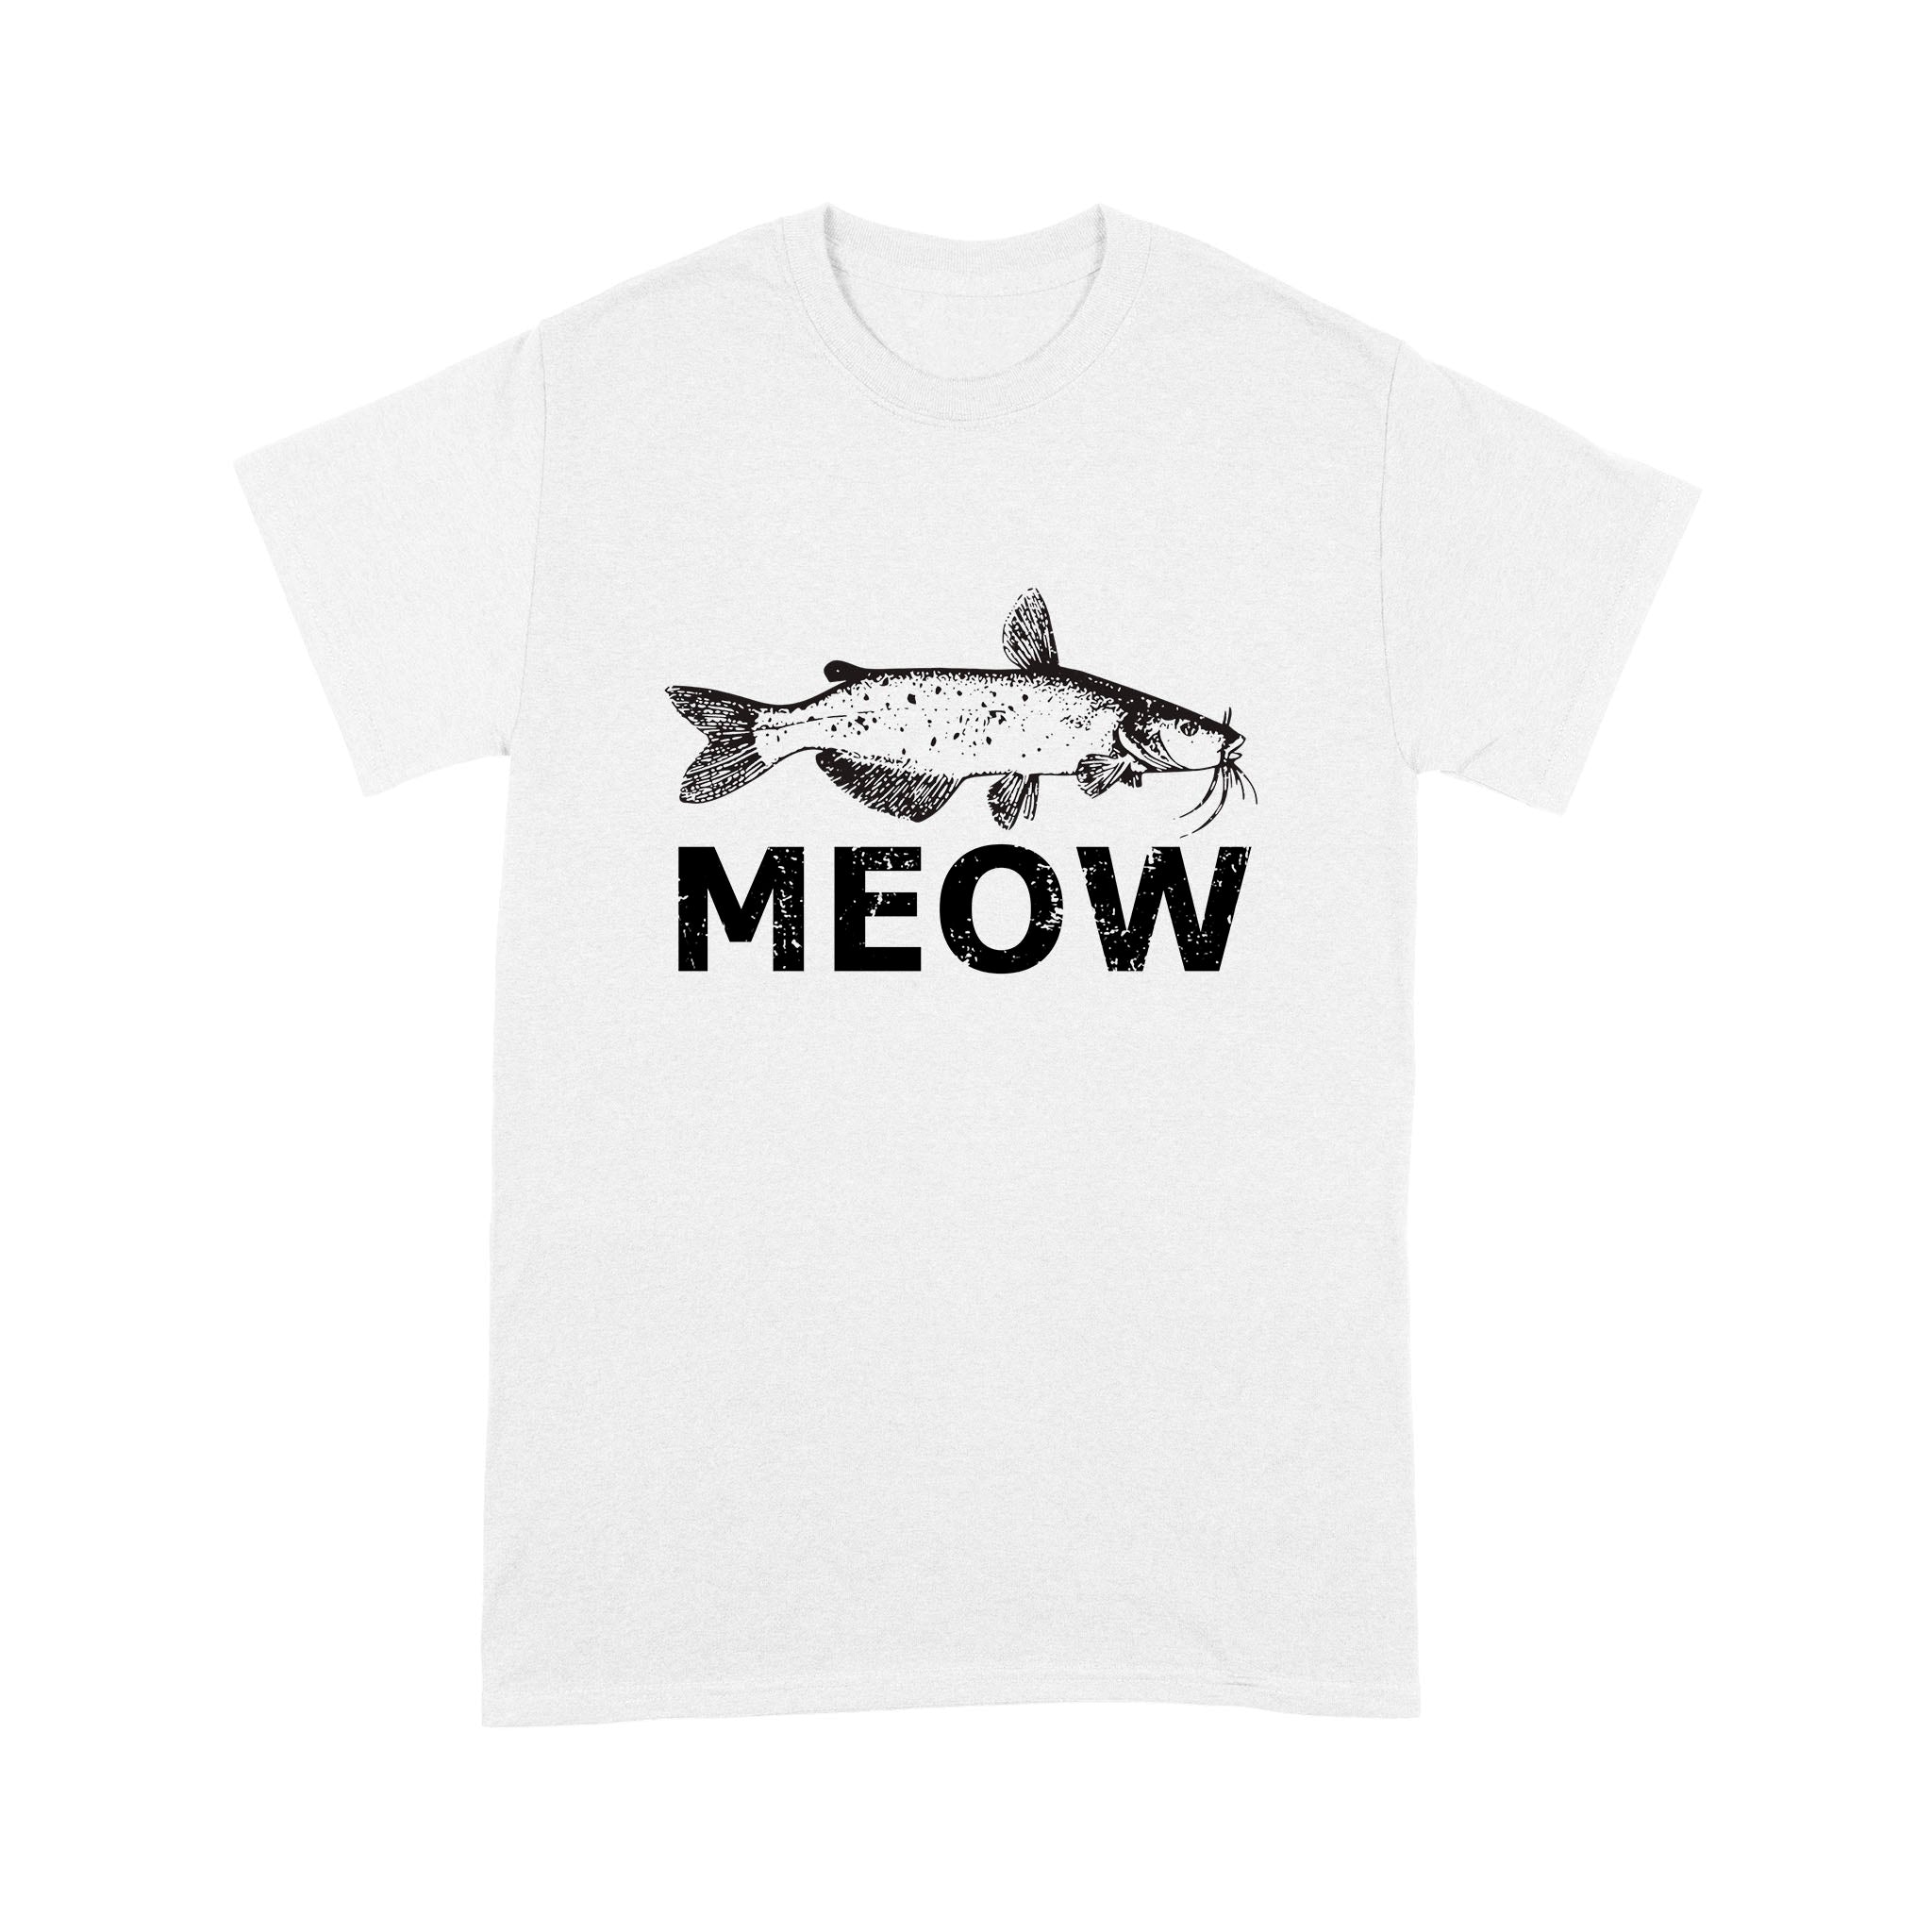 Meow Catfish Shirt Fishing T-Shirt - FSD1413D08